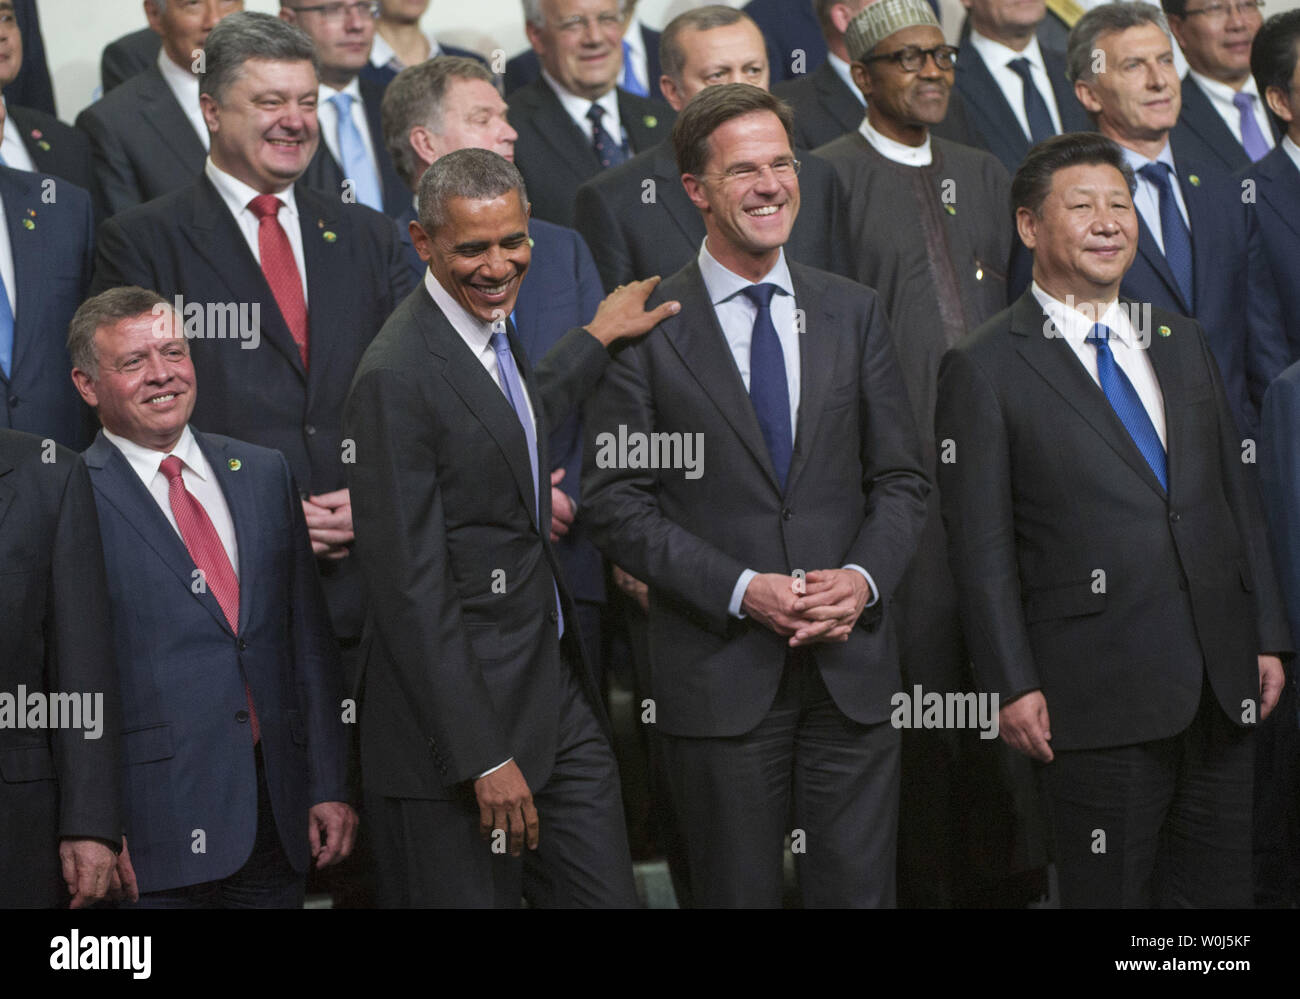 Le président Barack Obama des blagues avec Mark Rutte (R), Premier Ministre des Pays-Bas, lors d'une photo de famille à la 2016 Sommet sur la sécurité nucléaire à Washington, D.C. le 1 avril 2016. Le Sommet réunit les dirigeants du monde entier pour aider à apporter des améliorations à la sécurité des matières nucléaires dans le monde entier. Photo par Kevin Dietsch/UPI Banque D'Images